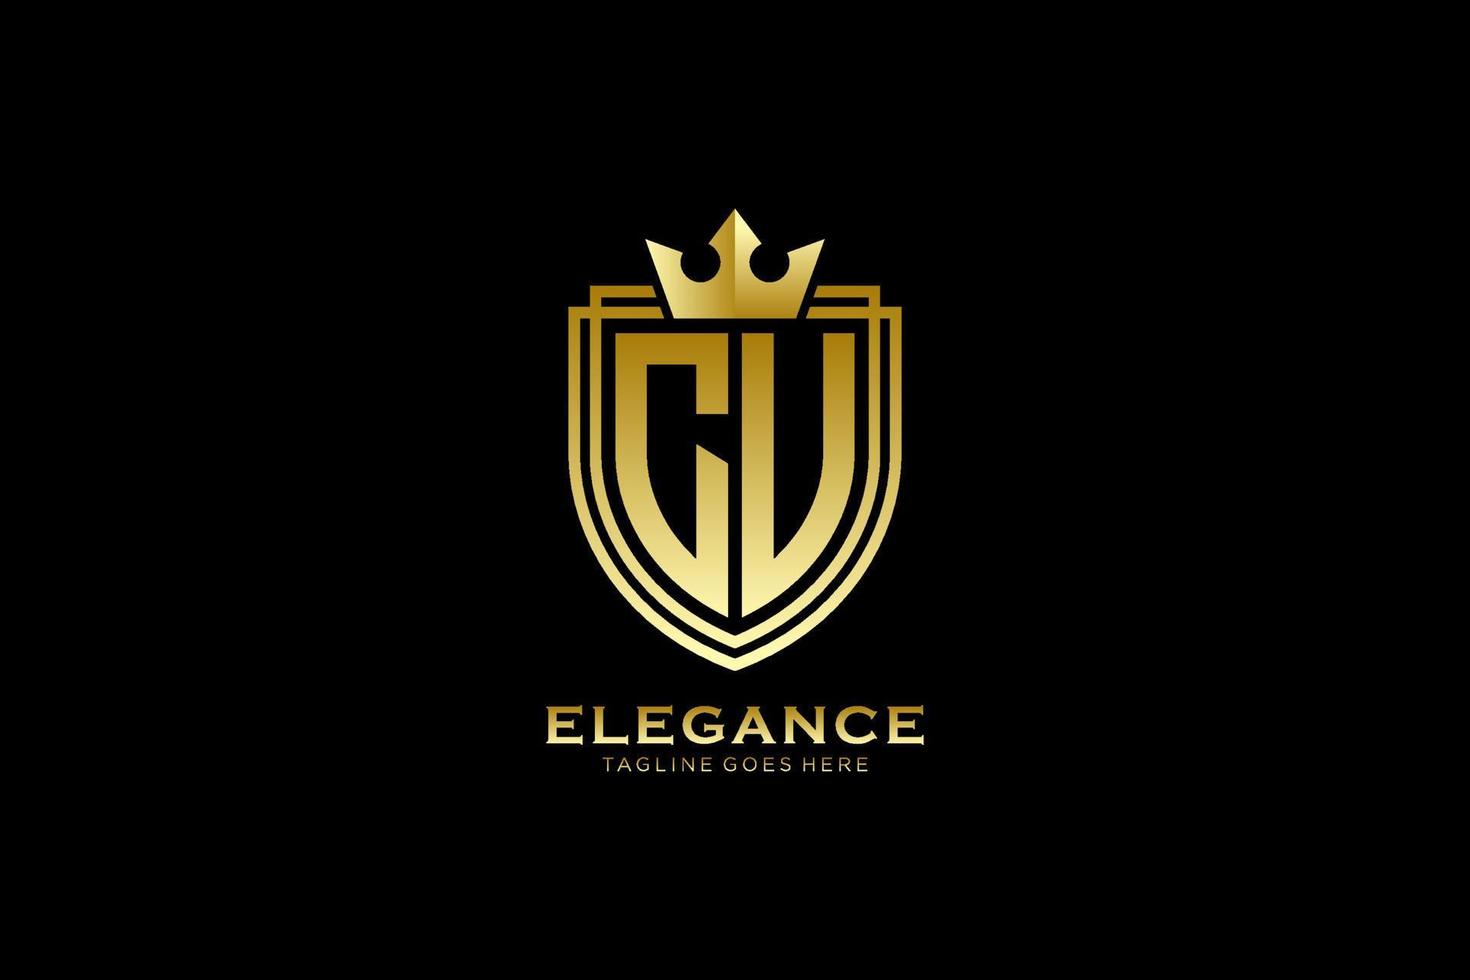 logo monogramme de luxe élégant initial cu ou modèle de badge avec volutes et couronne royale - parfait pour les projets de marque de luxe vecteur